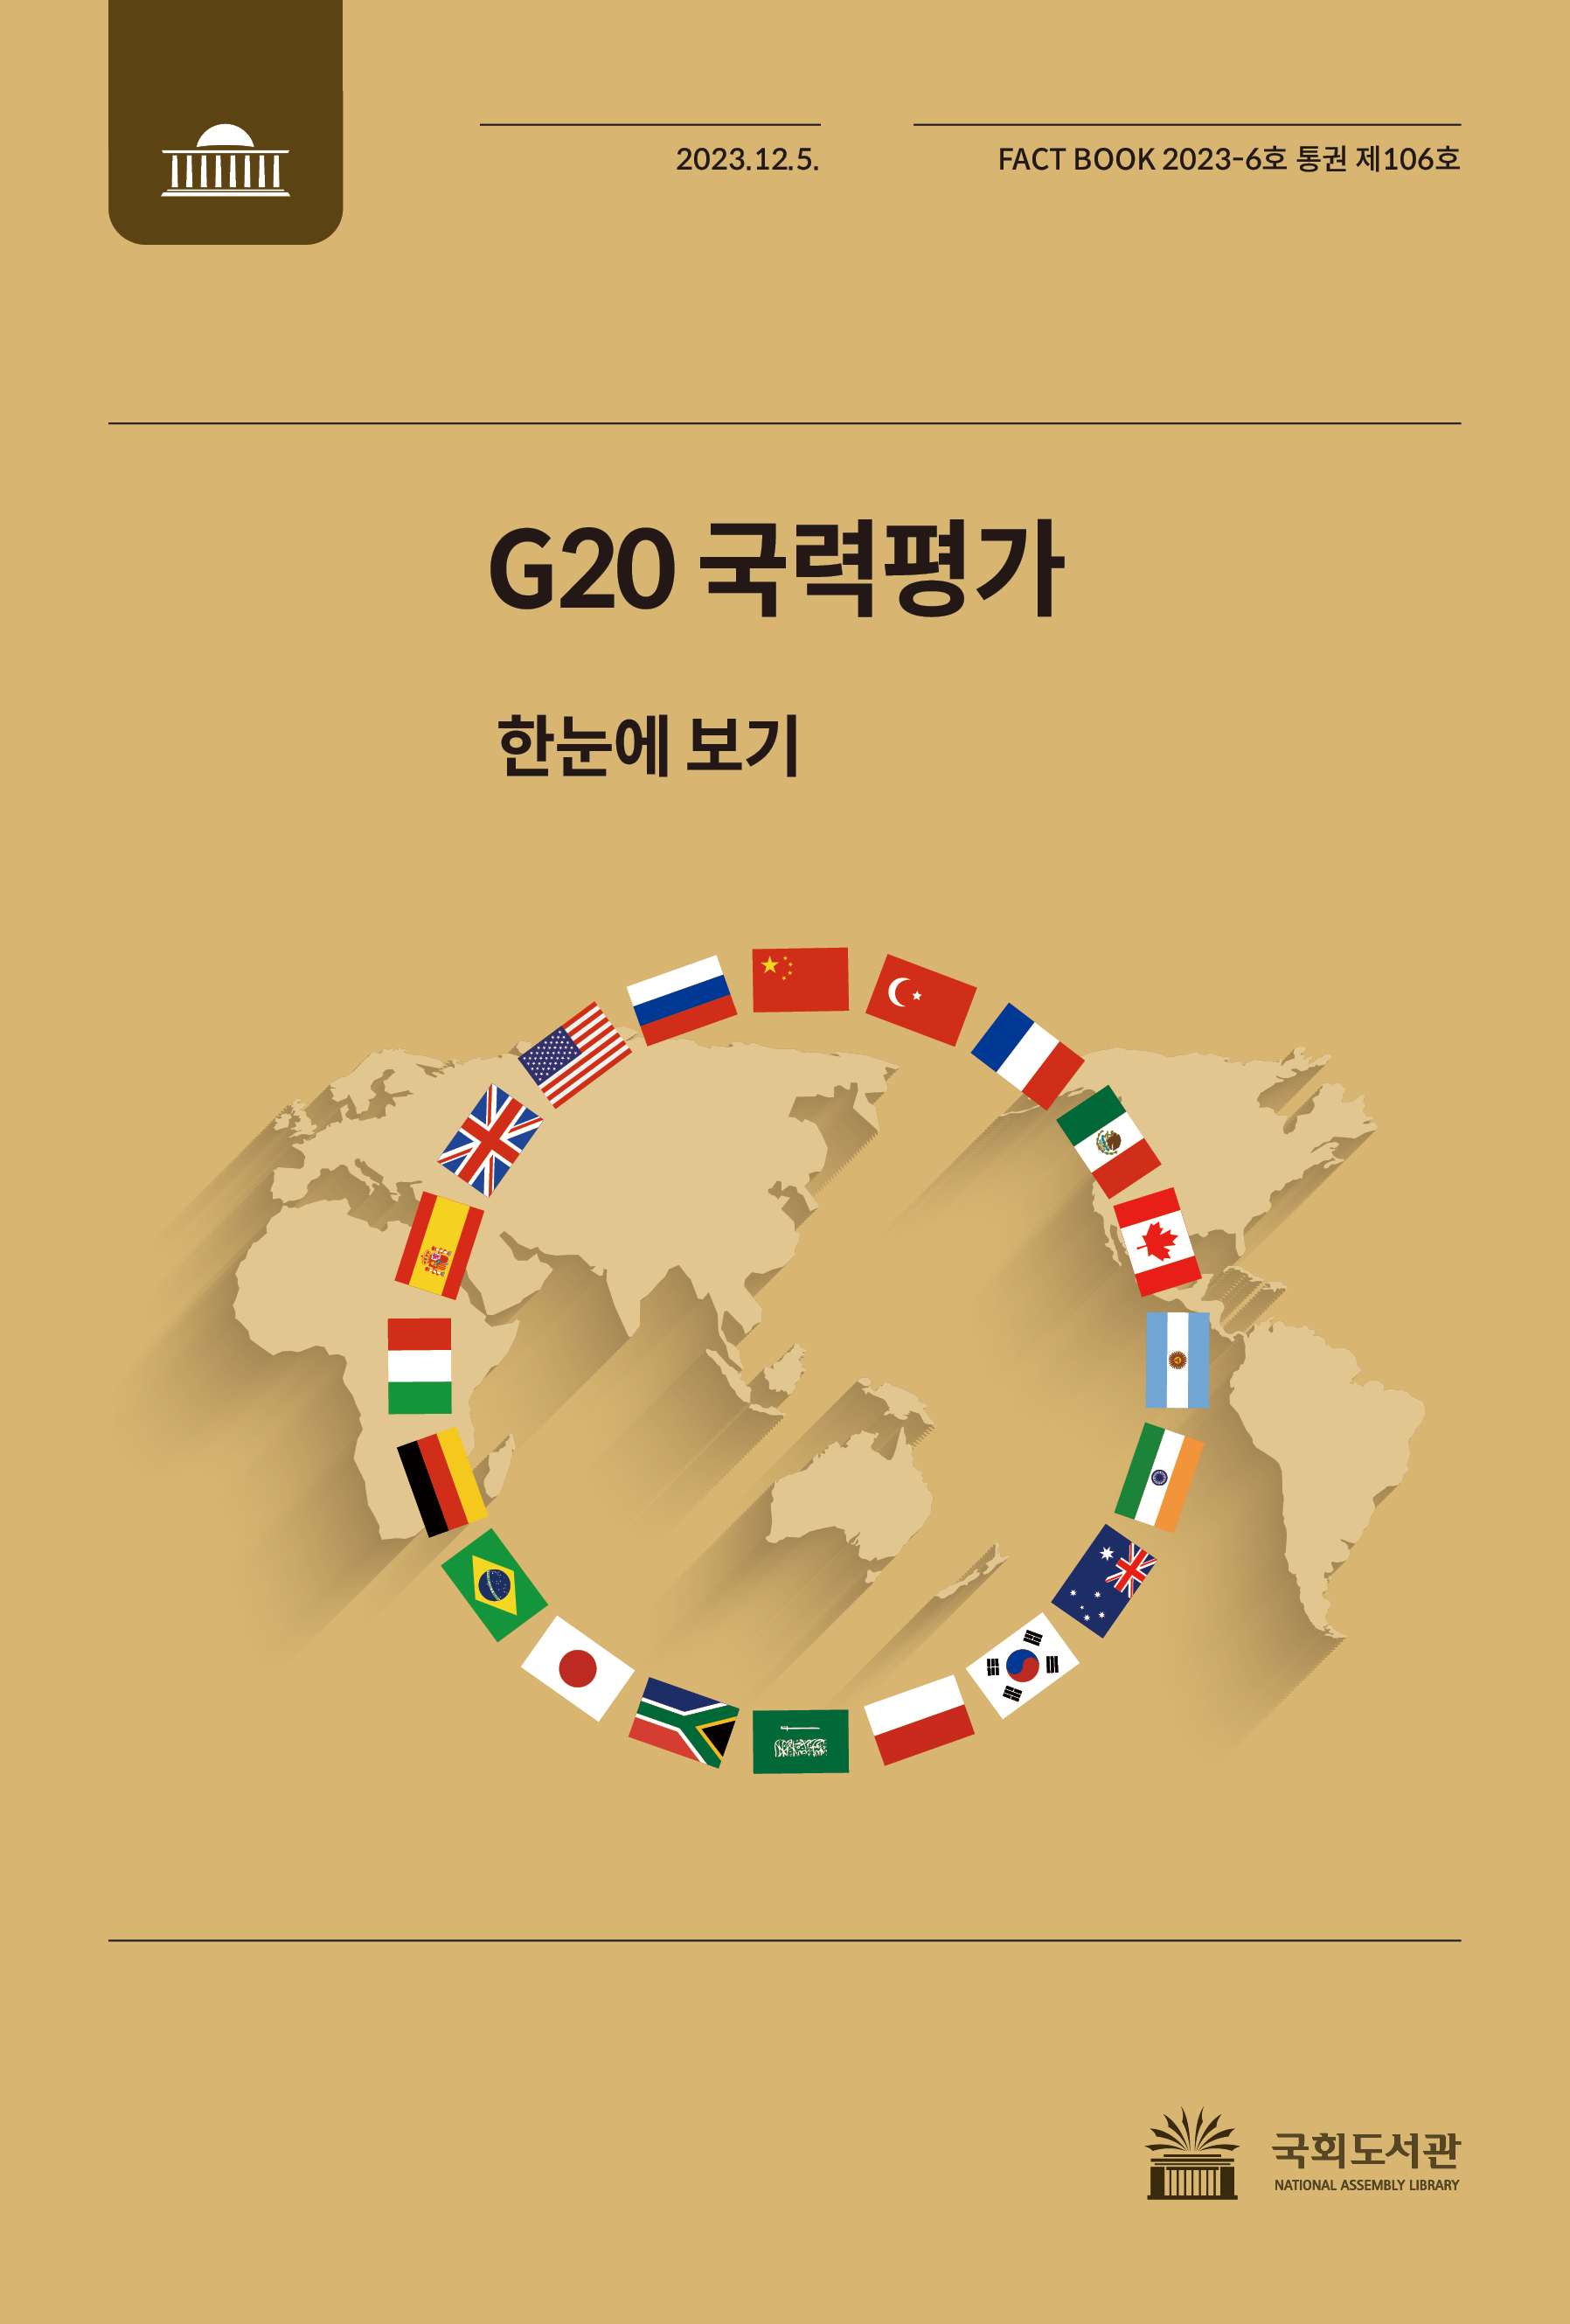 G20 국력평가 한눈에 보기